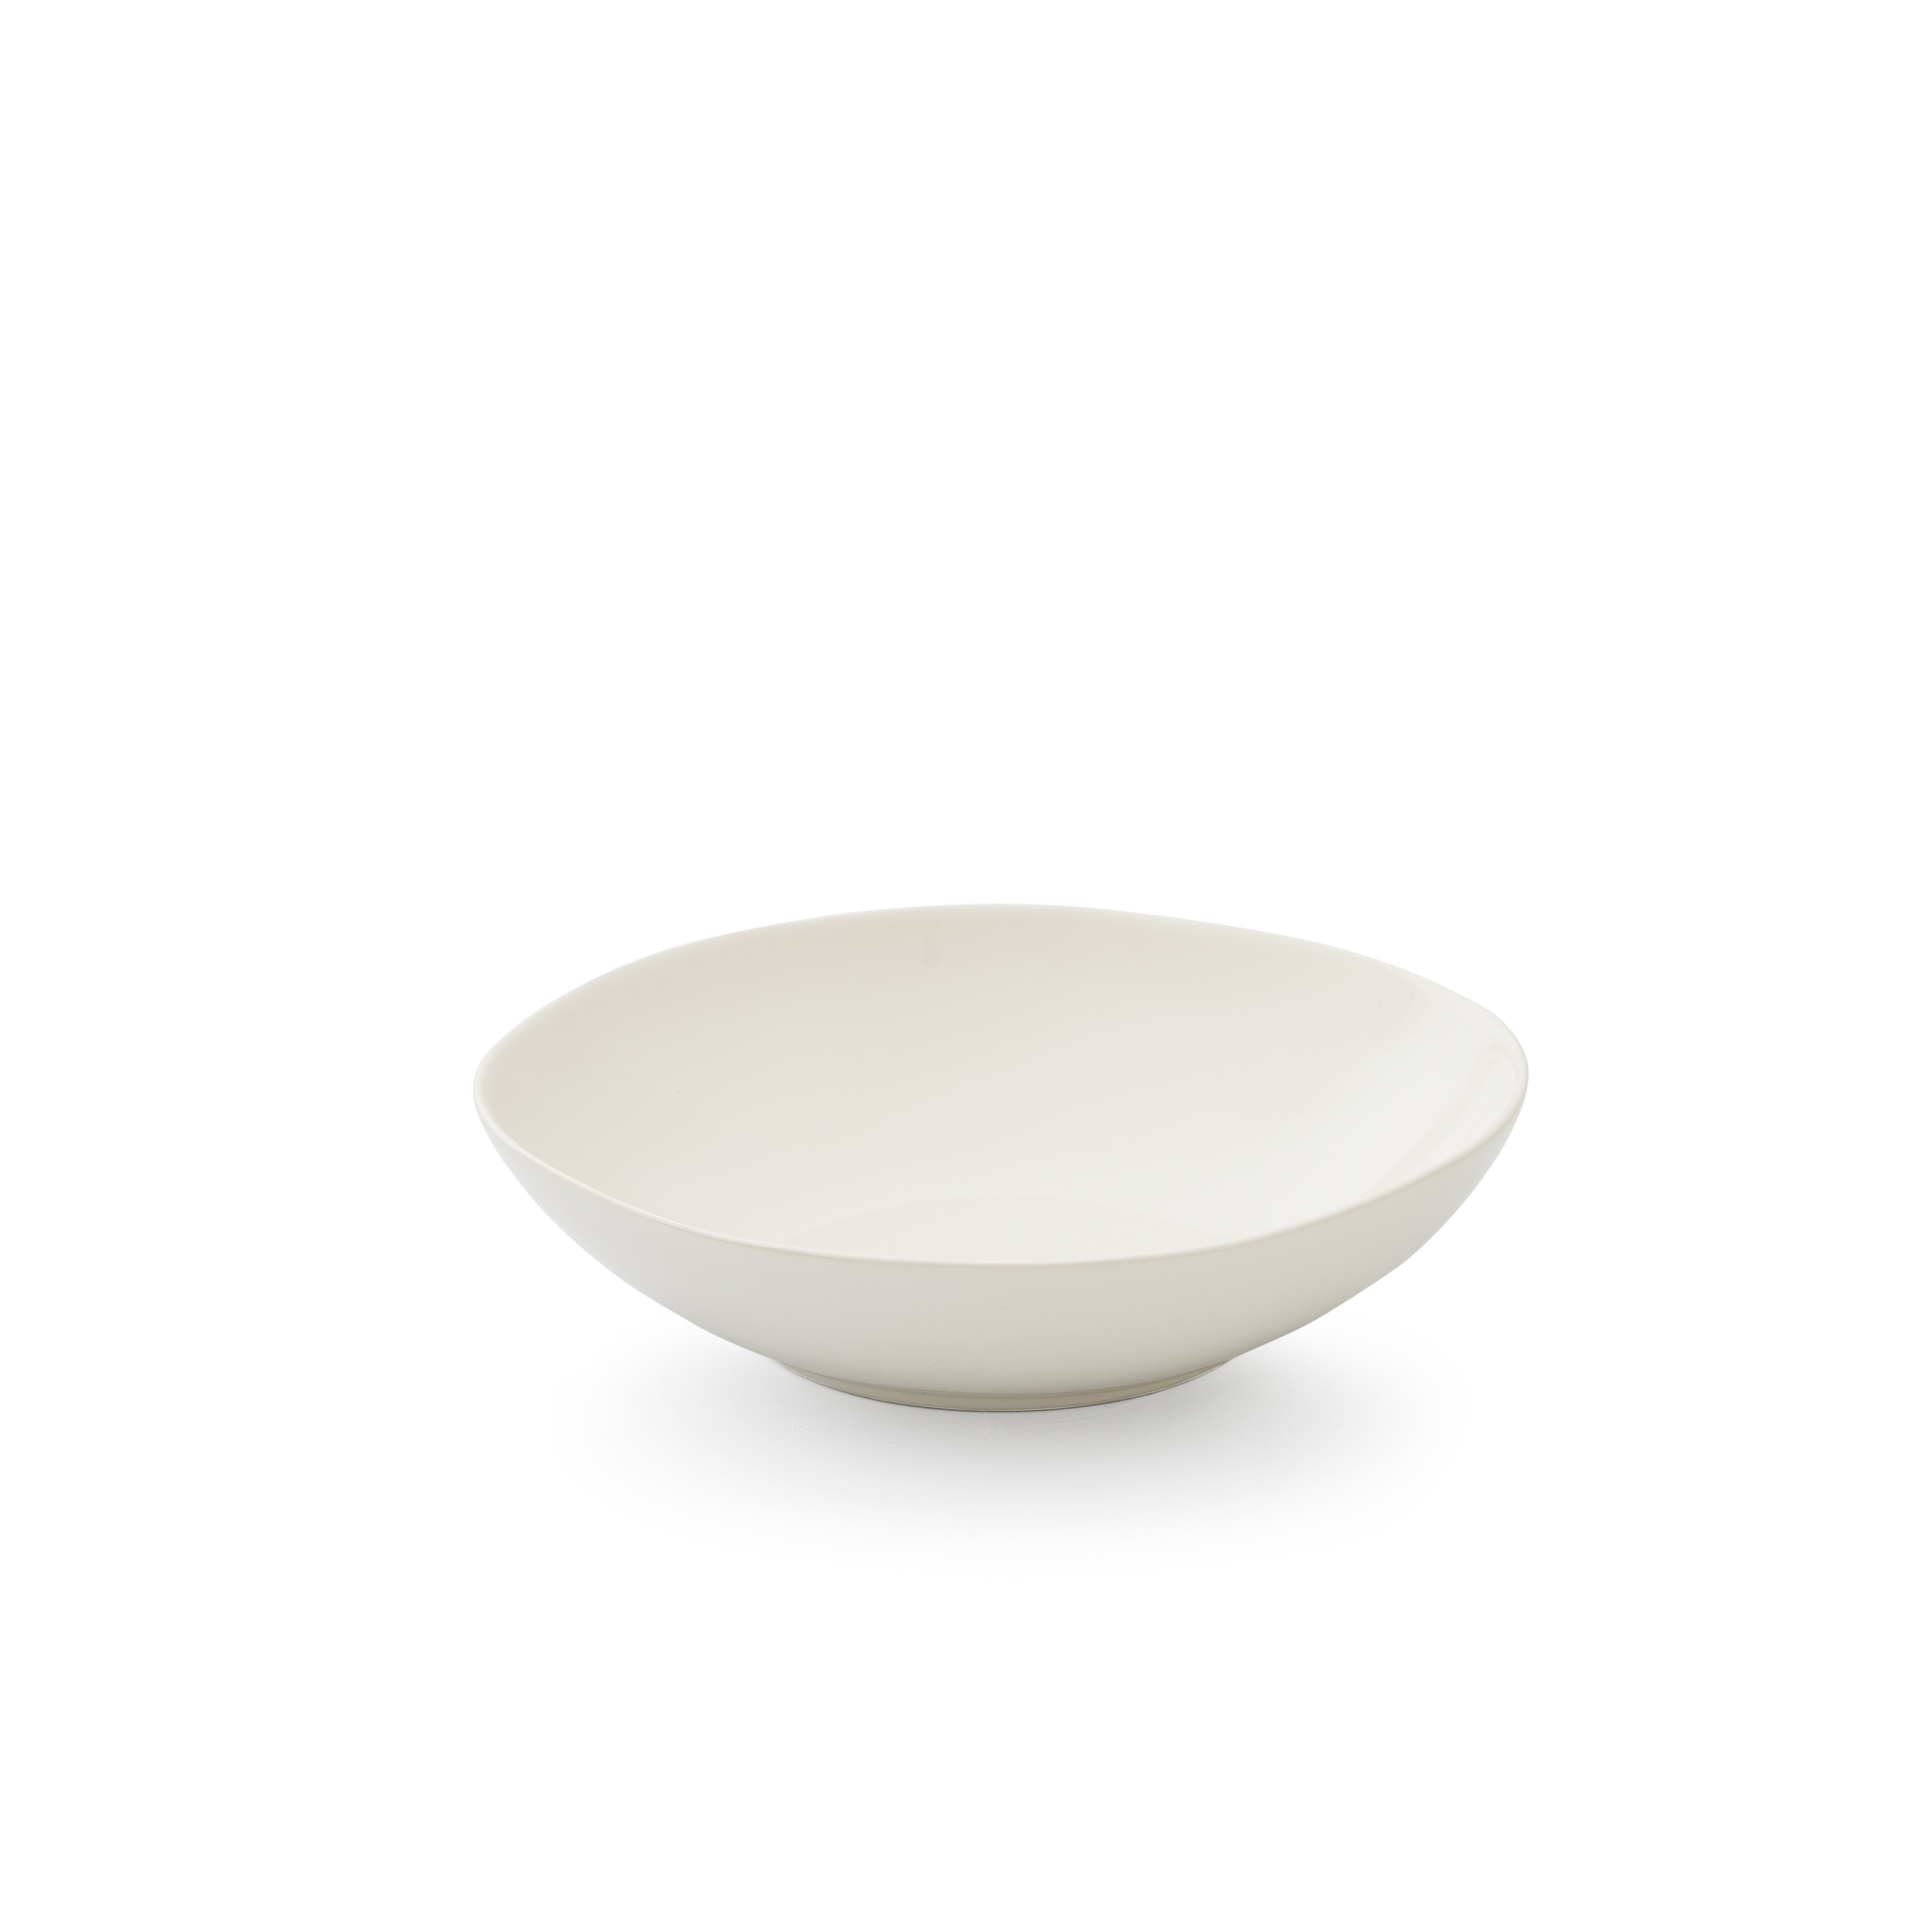 Sophie Conran Arbor 9" Pasta Bowl-Creamy White image number null